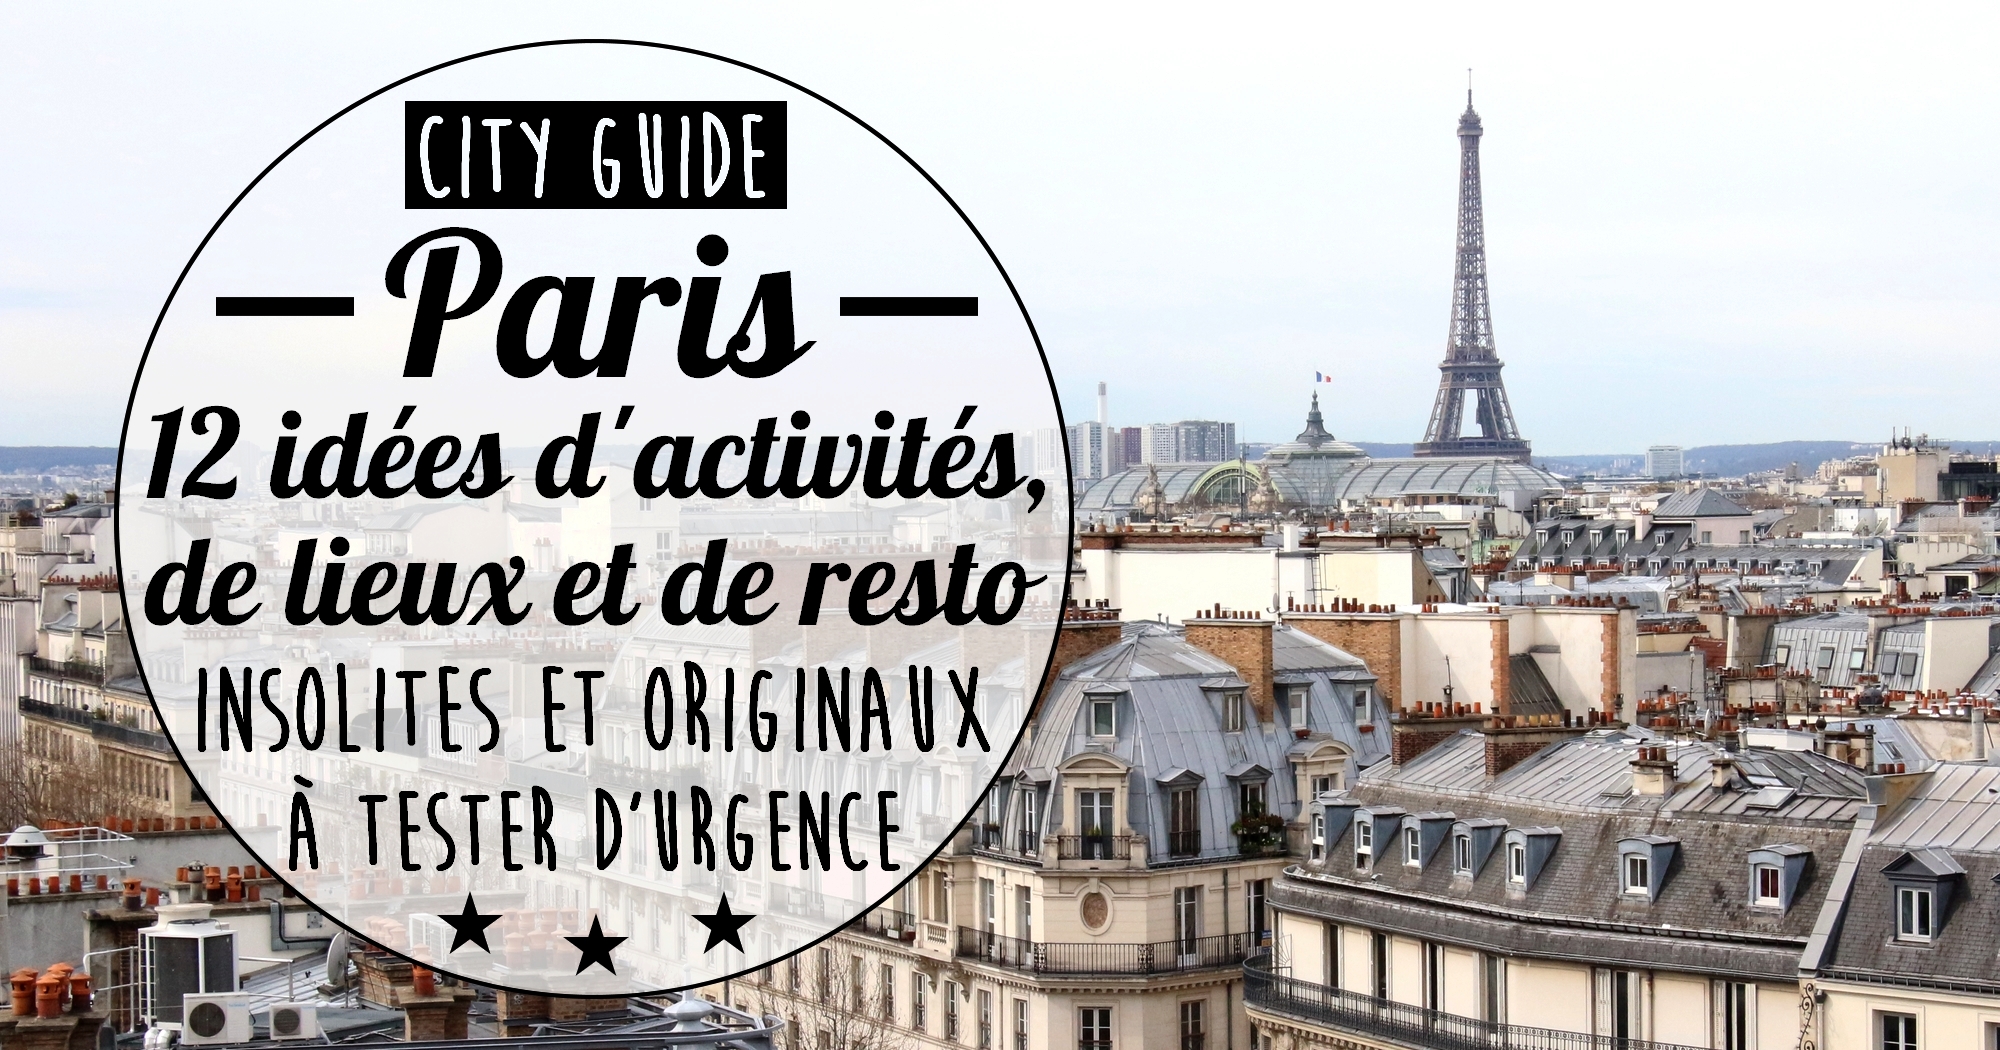 12 idées d’activités, lieux et restaurants originaux et insolites à tester à Paris